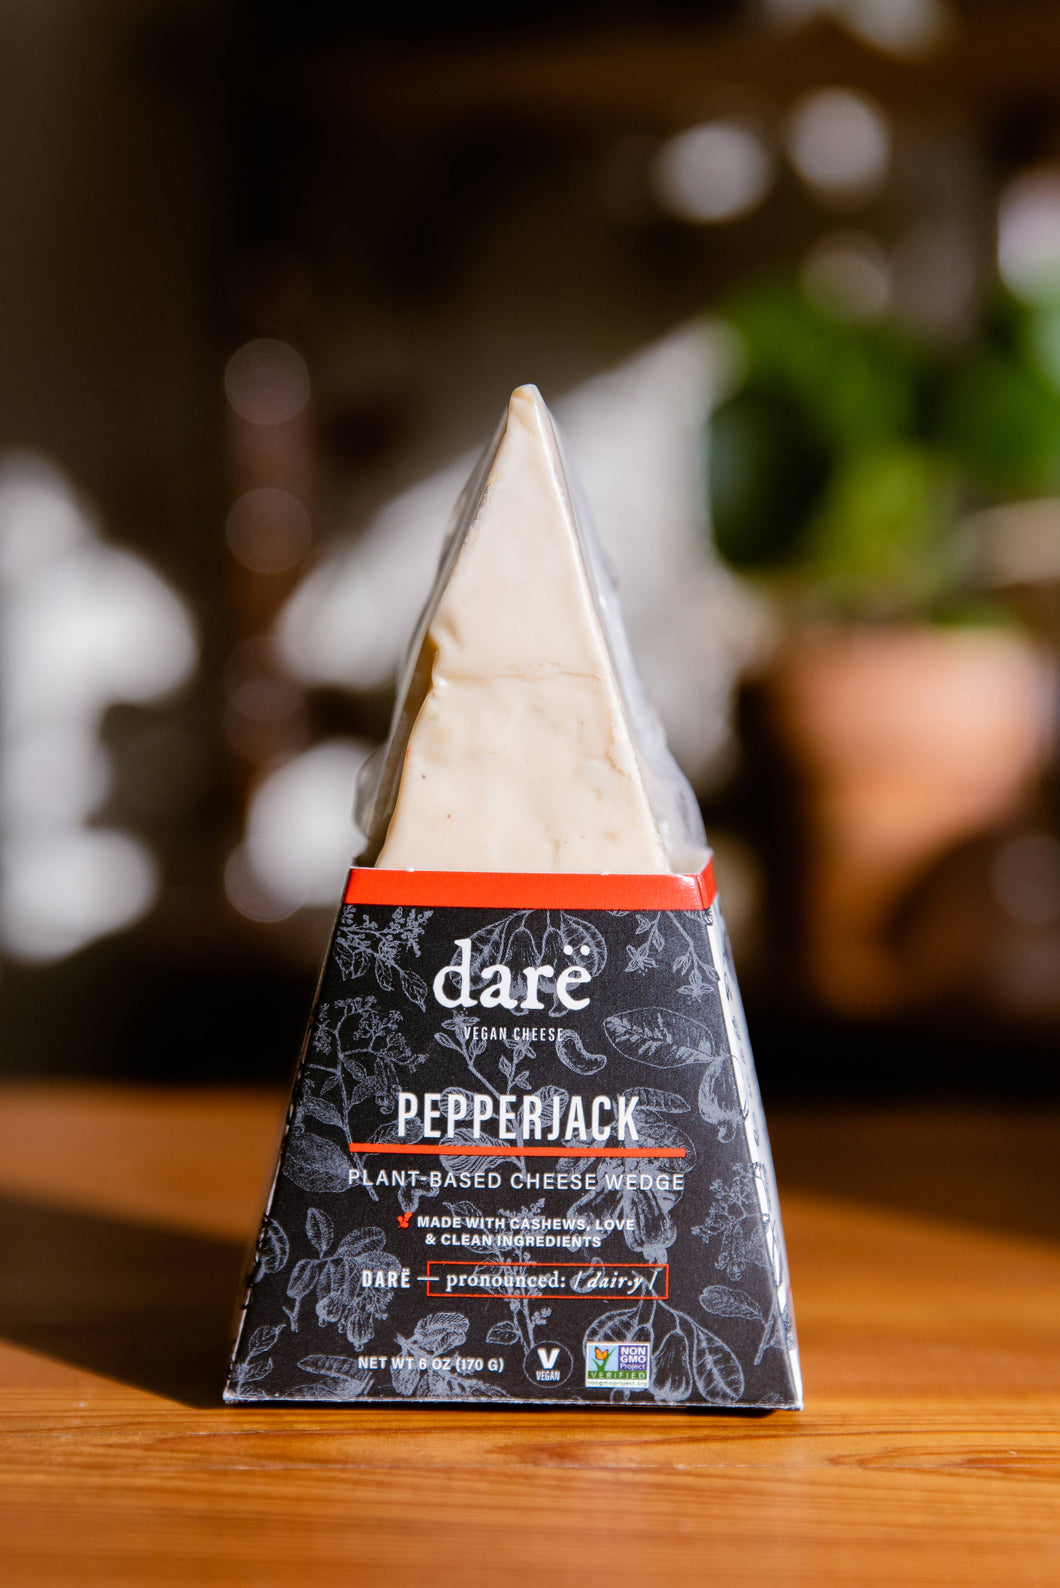 Darë Vegan Cheese - Pepperjack Plant-Based Cheese Wedge